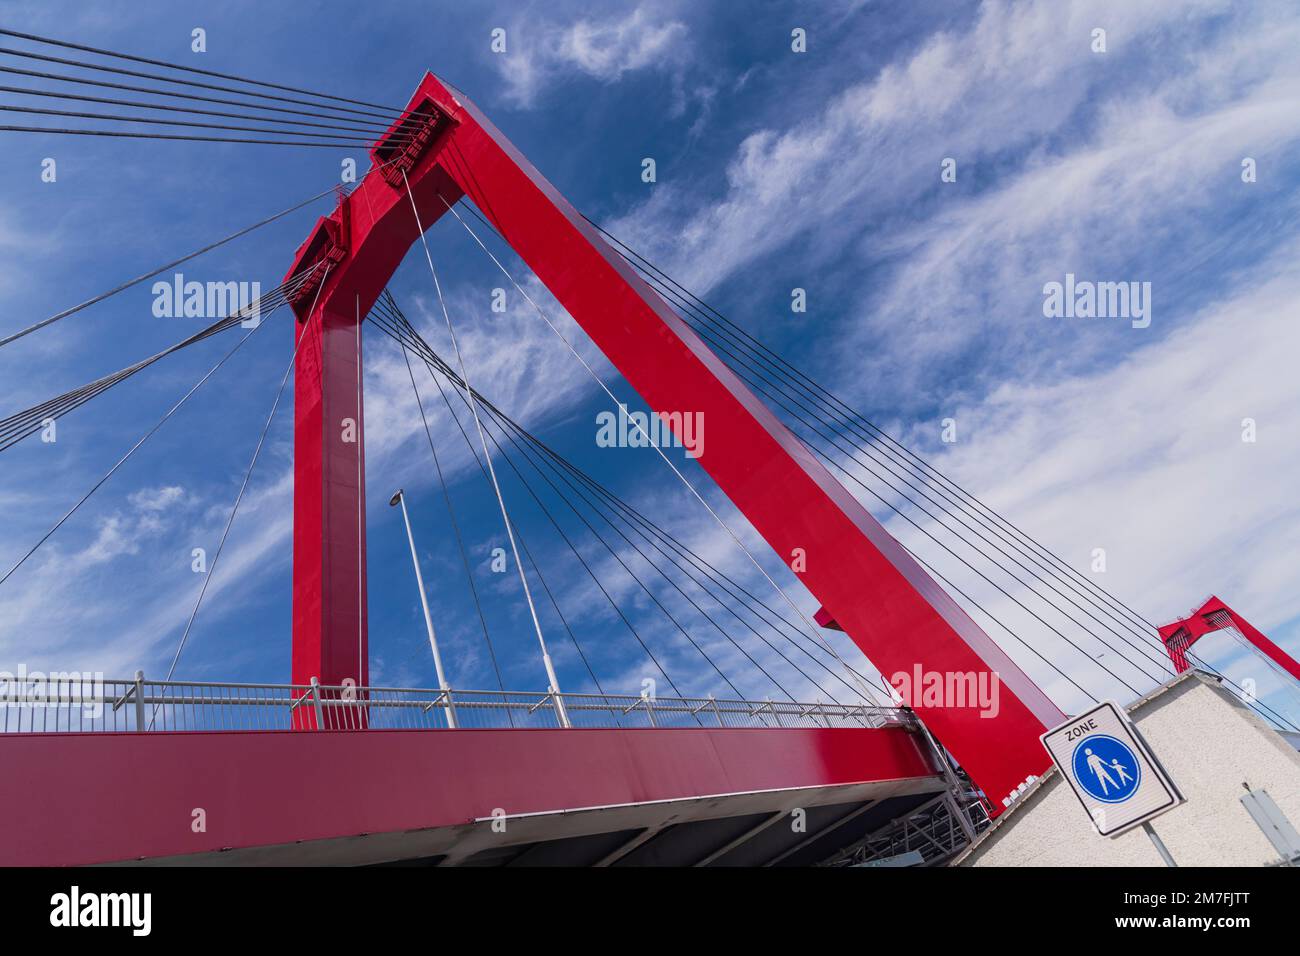 Hollande, Rotterdam, Willemsbrug ou le pont de William, un pont de passage par câble construit en 1981 sur la rivière Nieuwe Maas et nommé d'après le roi Willem III des pays-Bas. Banque D'Images